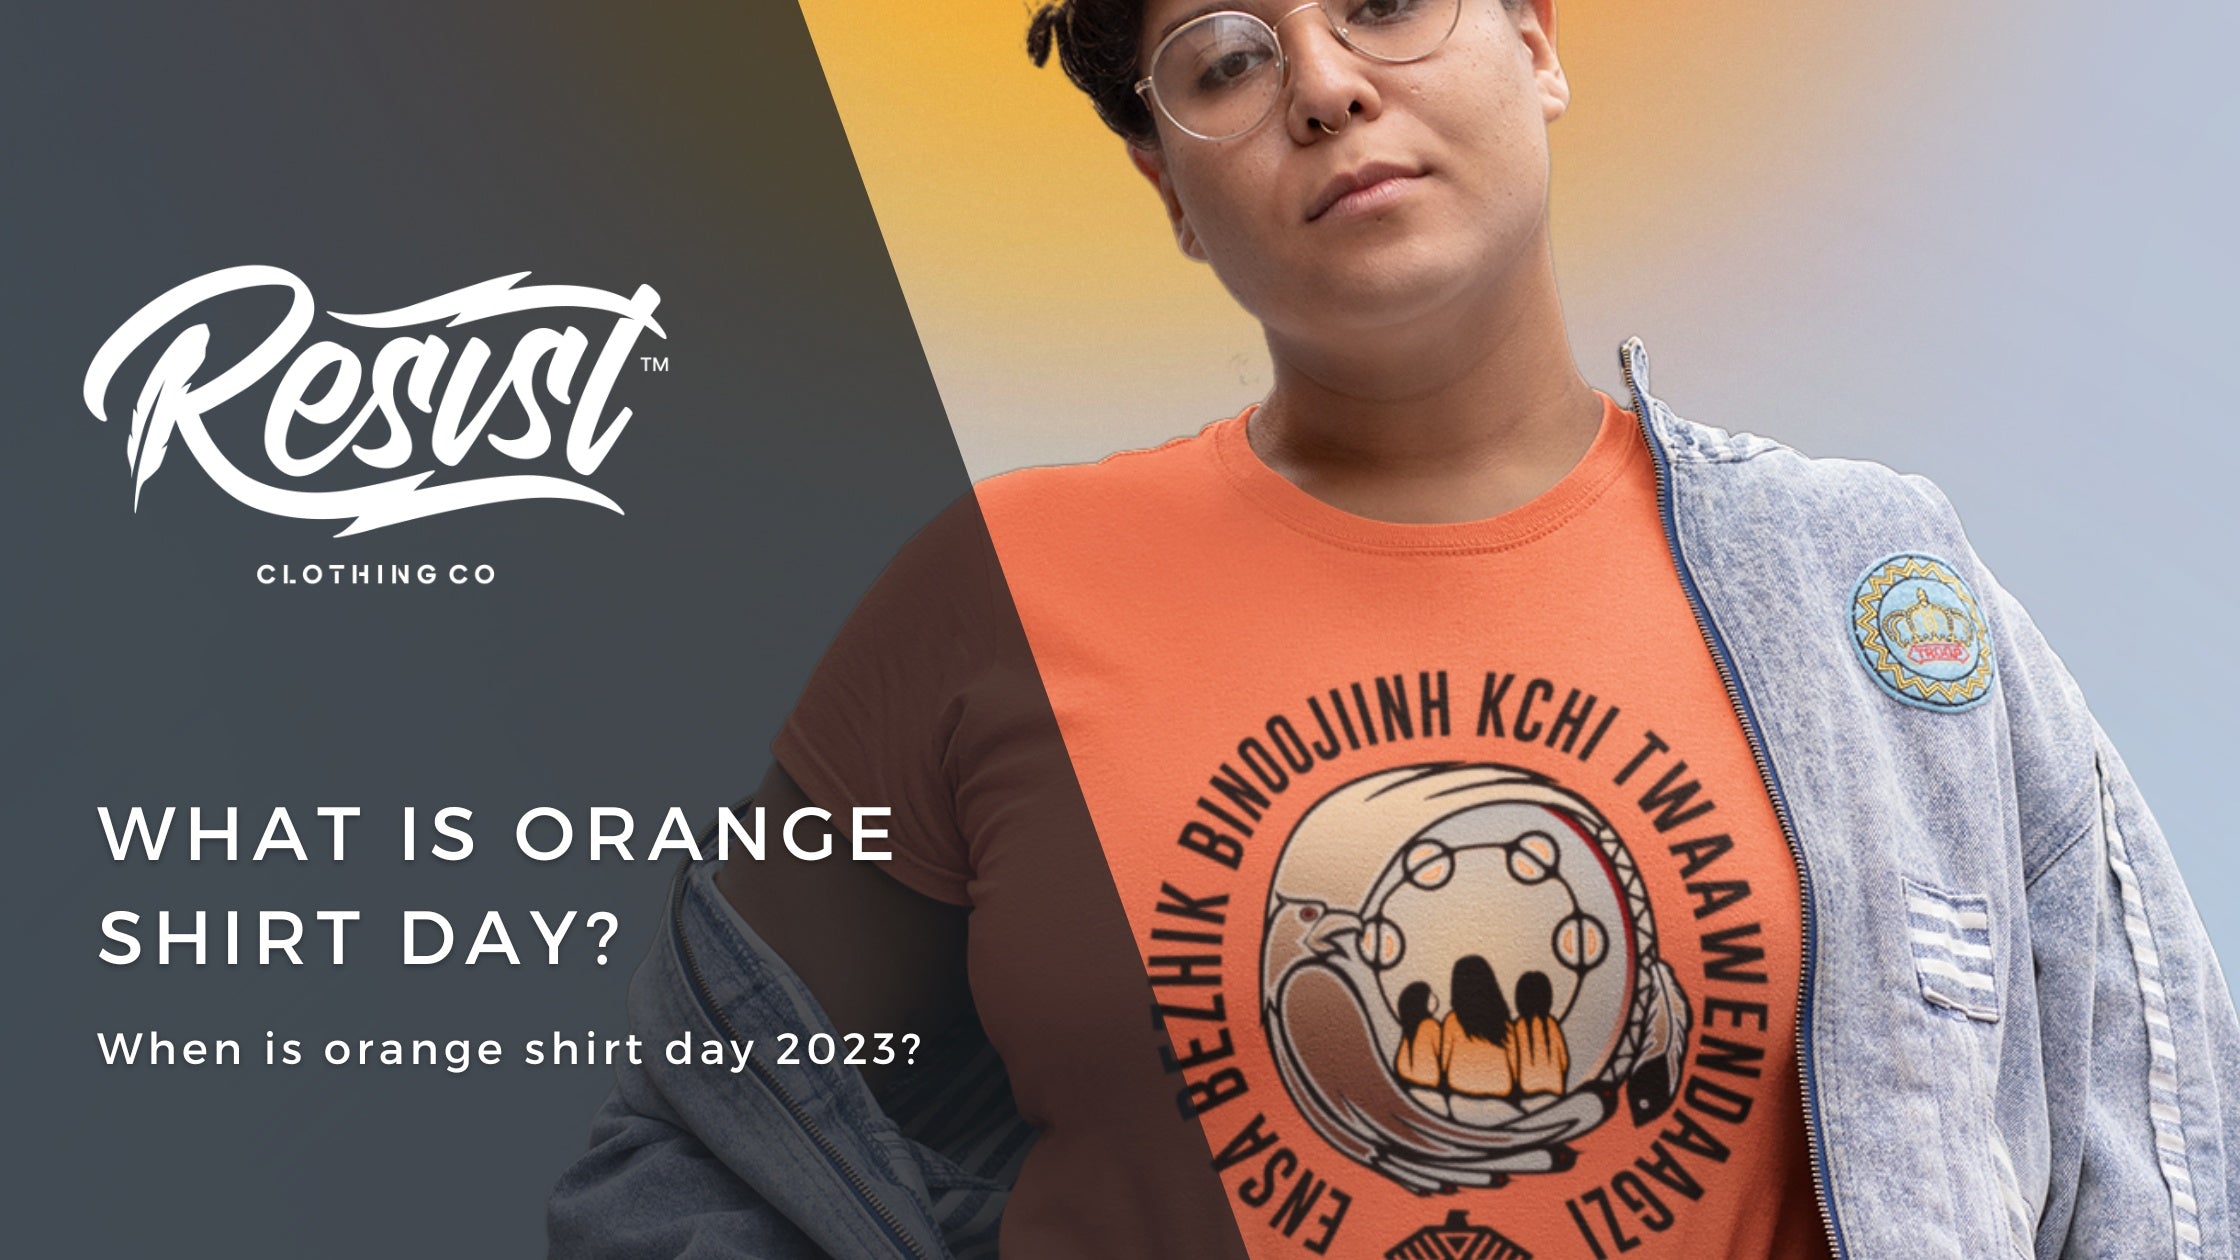 When is Orange Shirt Day 2023? What is Orange Shirt day?